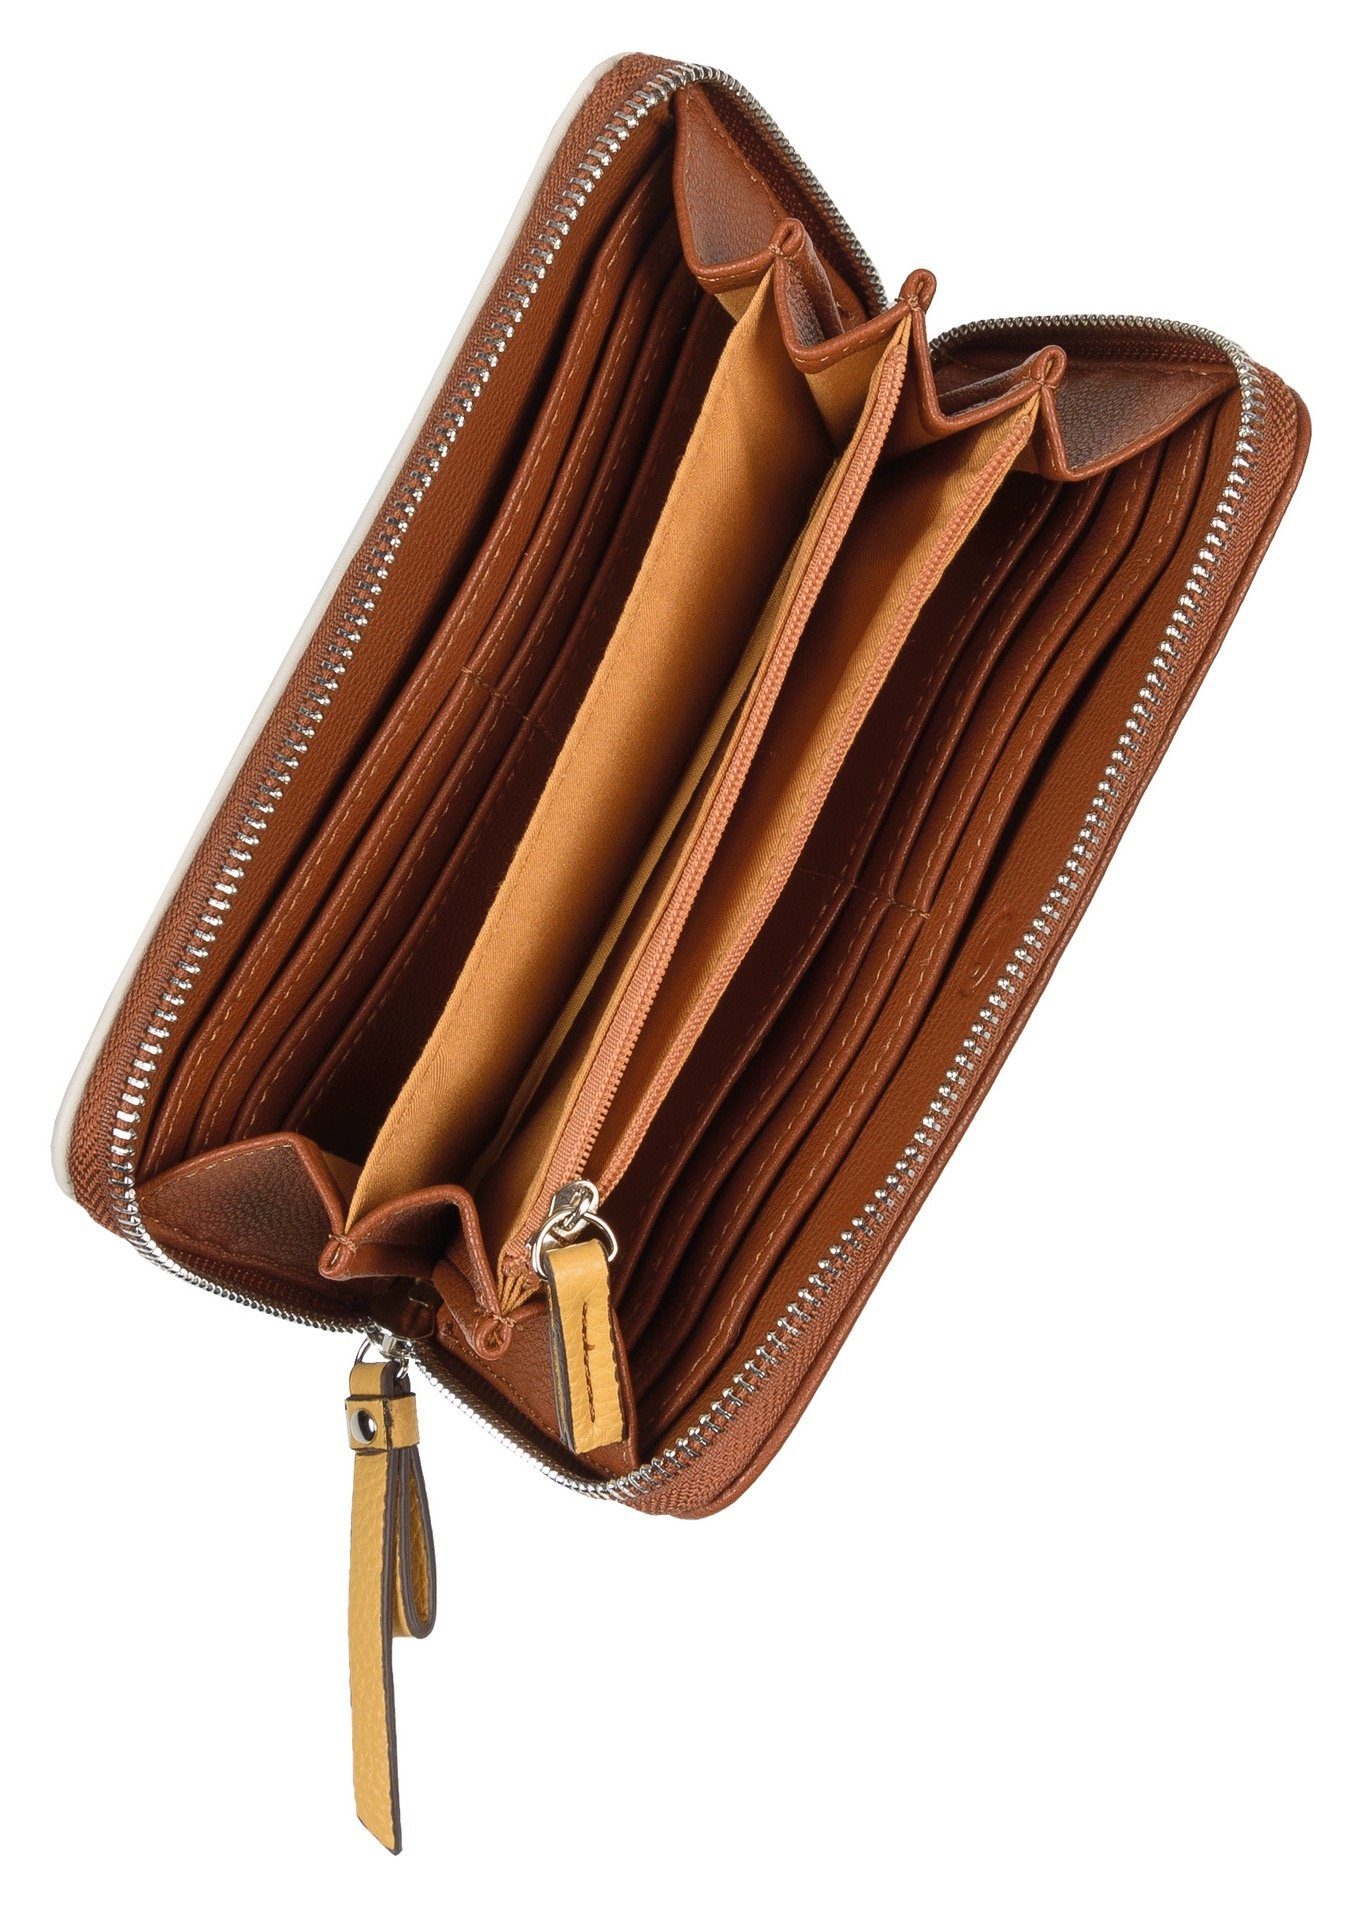 TOM praktischer Geldbörse TAILOR mit wallet, Einteilung mixed-cognac Long zip